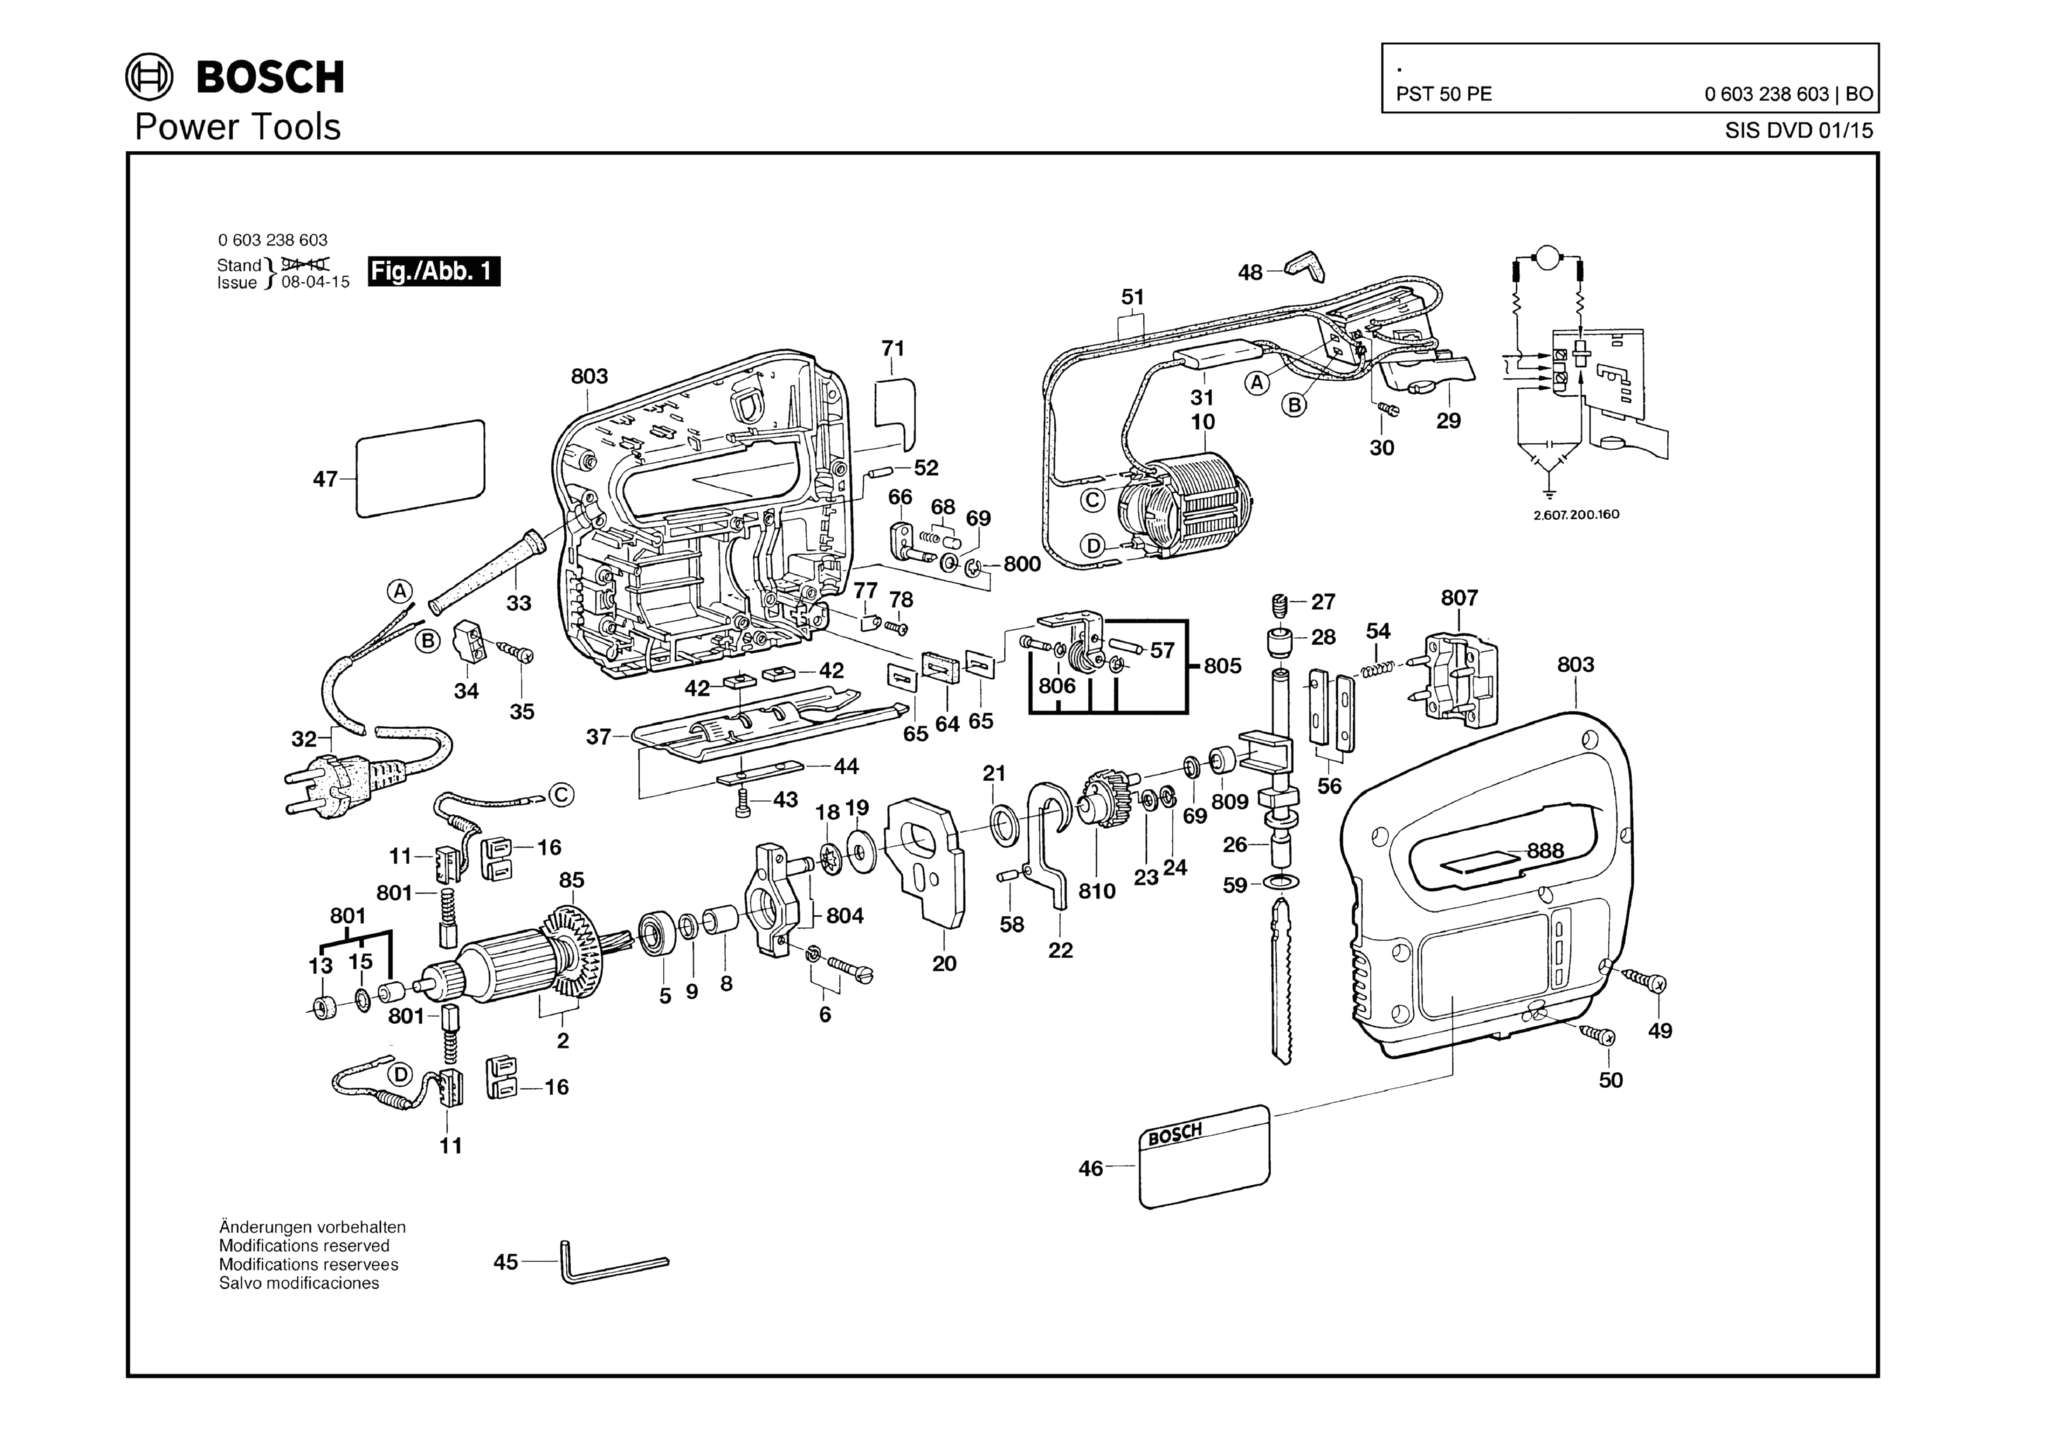 Запчасти, схема и деталировка Bosch PST 50 PE (ТИП 603238603)